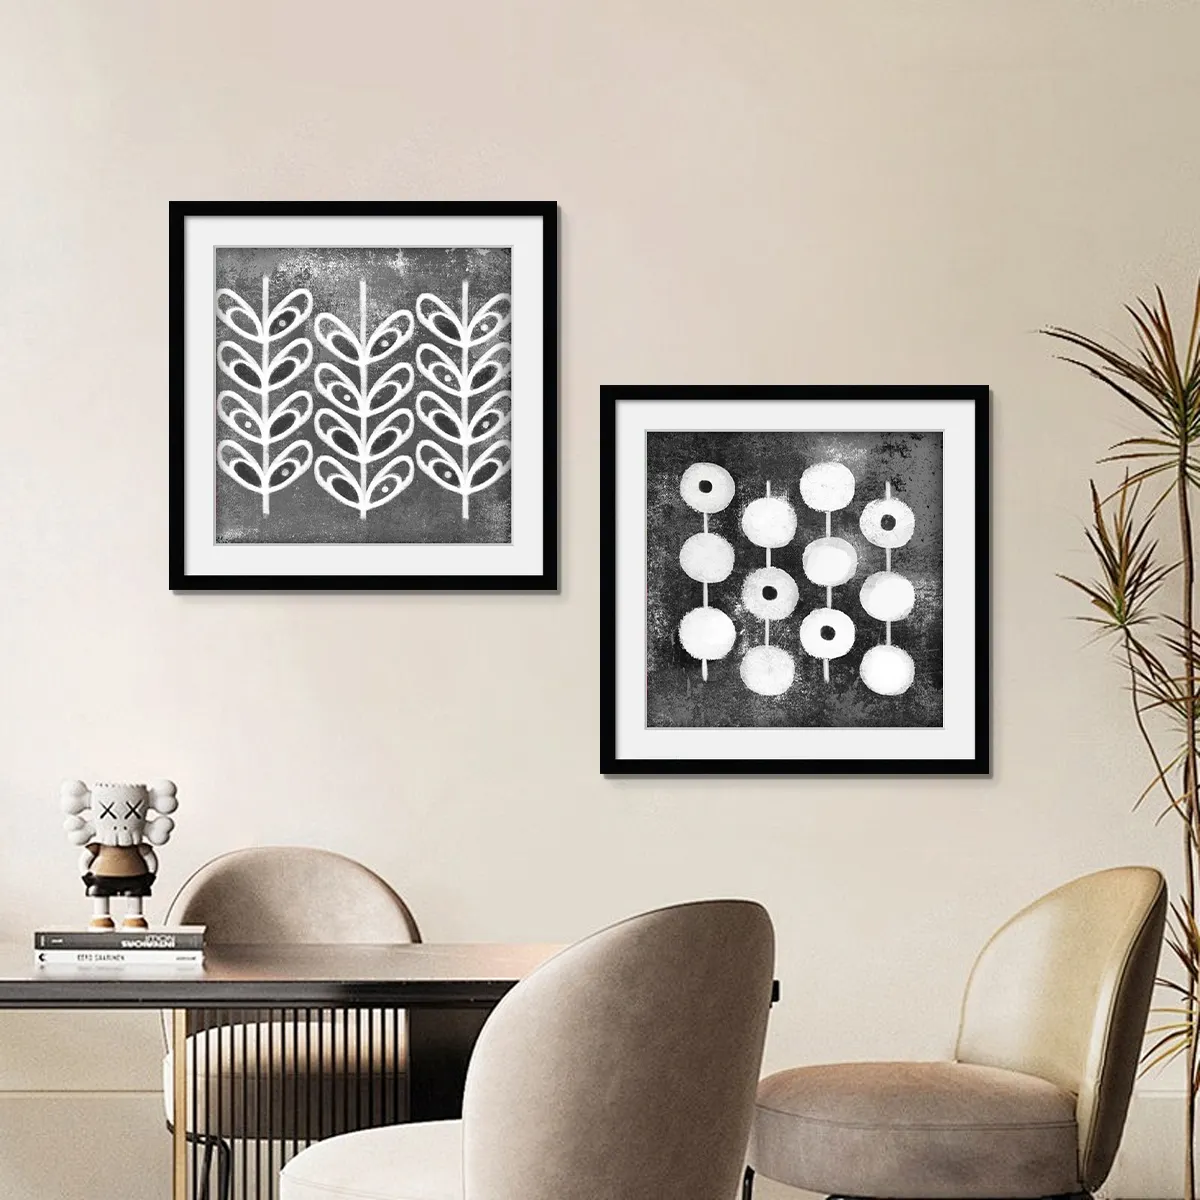 Moderne abstrakte schwarze und weiße Wandkarten für Haus oder Hotel Wohnzimmerdekoration stilvolle Wandkunst-Deko hängende Gemälde